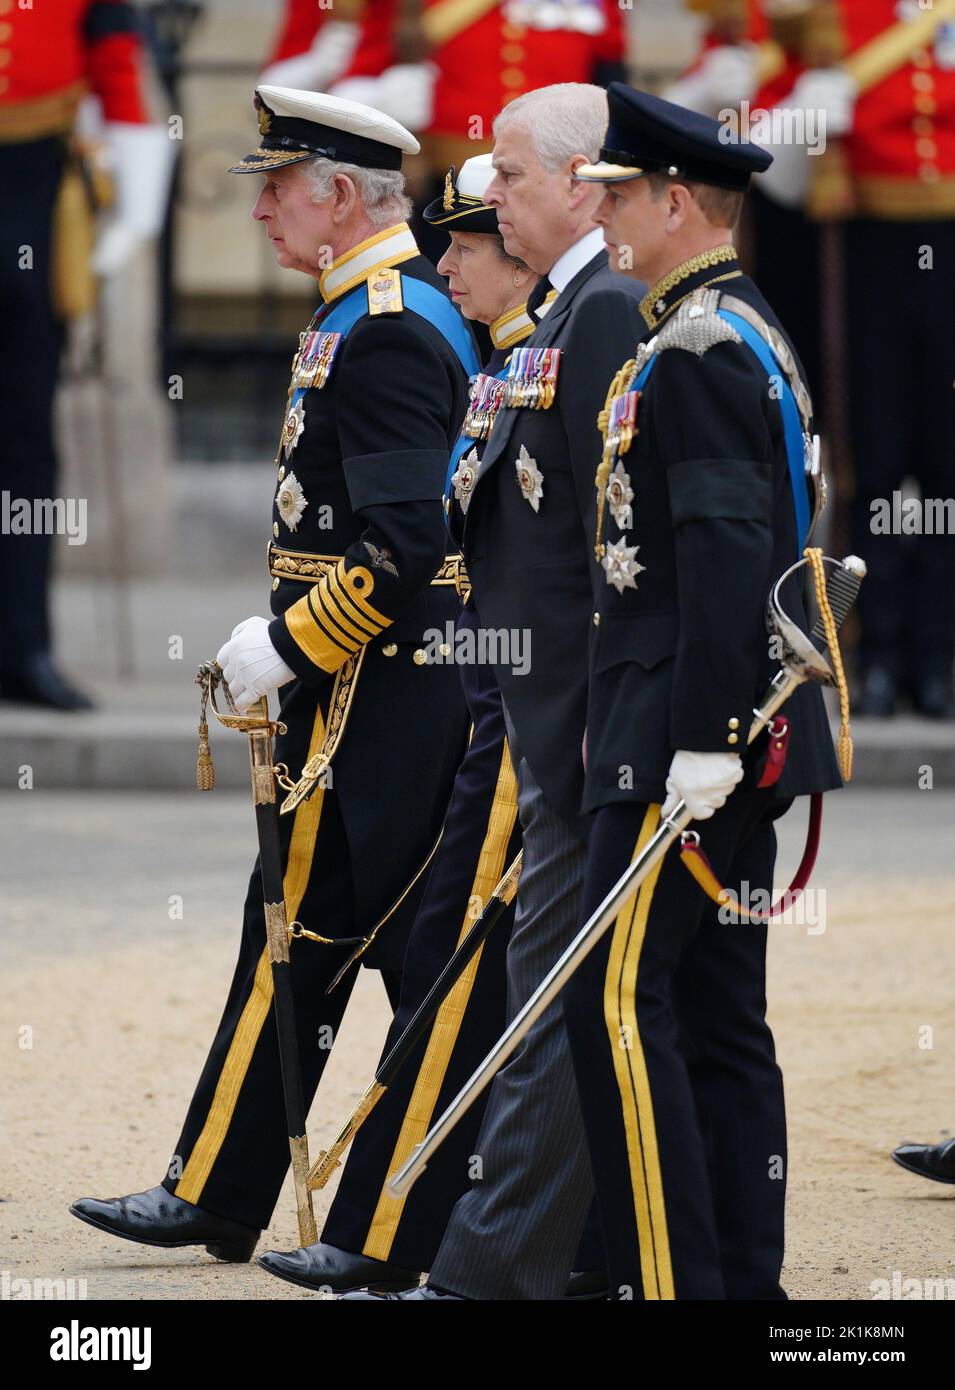 (De gauche à droite) le roi Charles III, la princesse royale, le duc d'York et le comte de Wessex arrivant au funérailles d'État de la reine Elizabeth II, tenu à l'abbaye de Westminster, Londres. Date de la photo: Lundi 19 septembre 2022. Banque D'Images